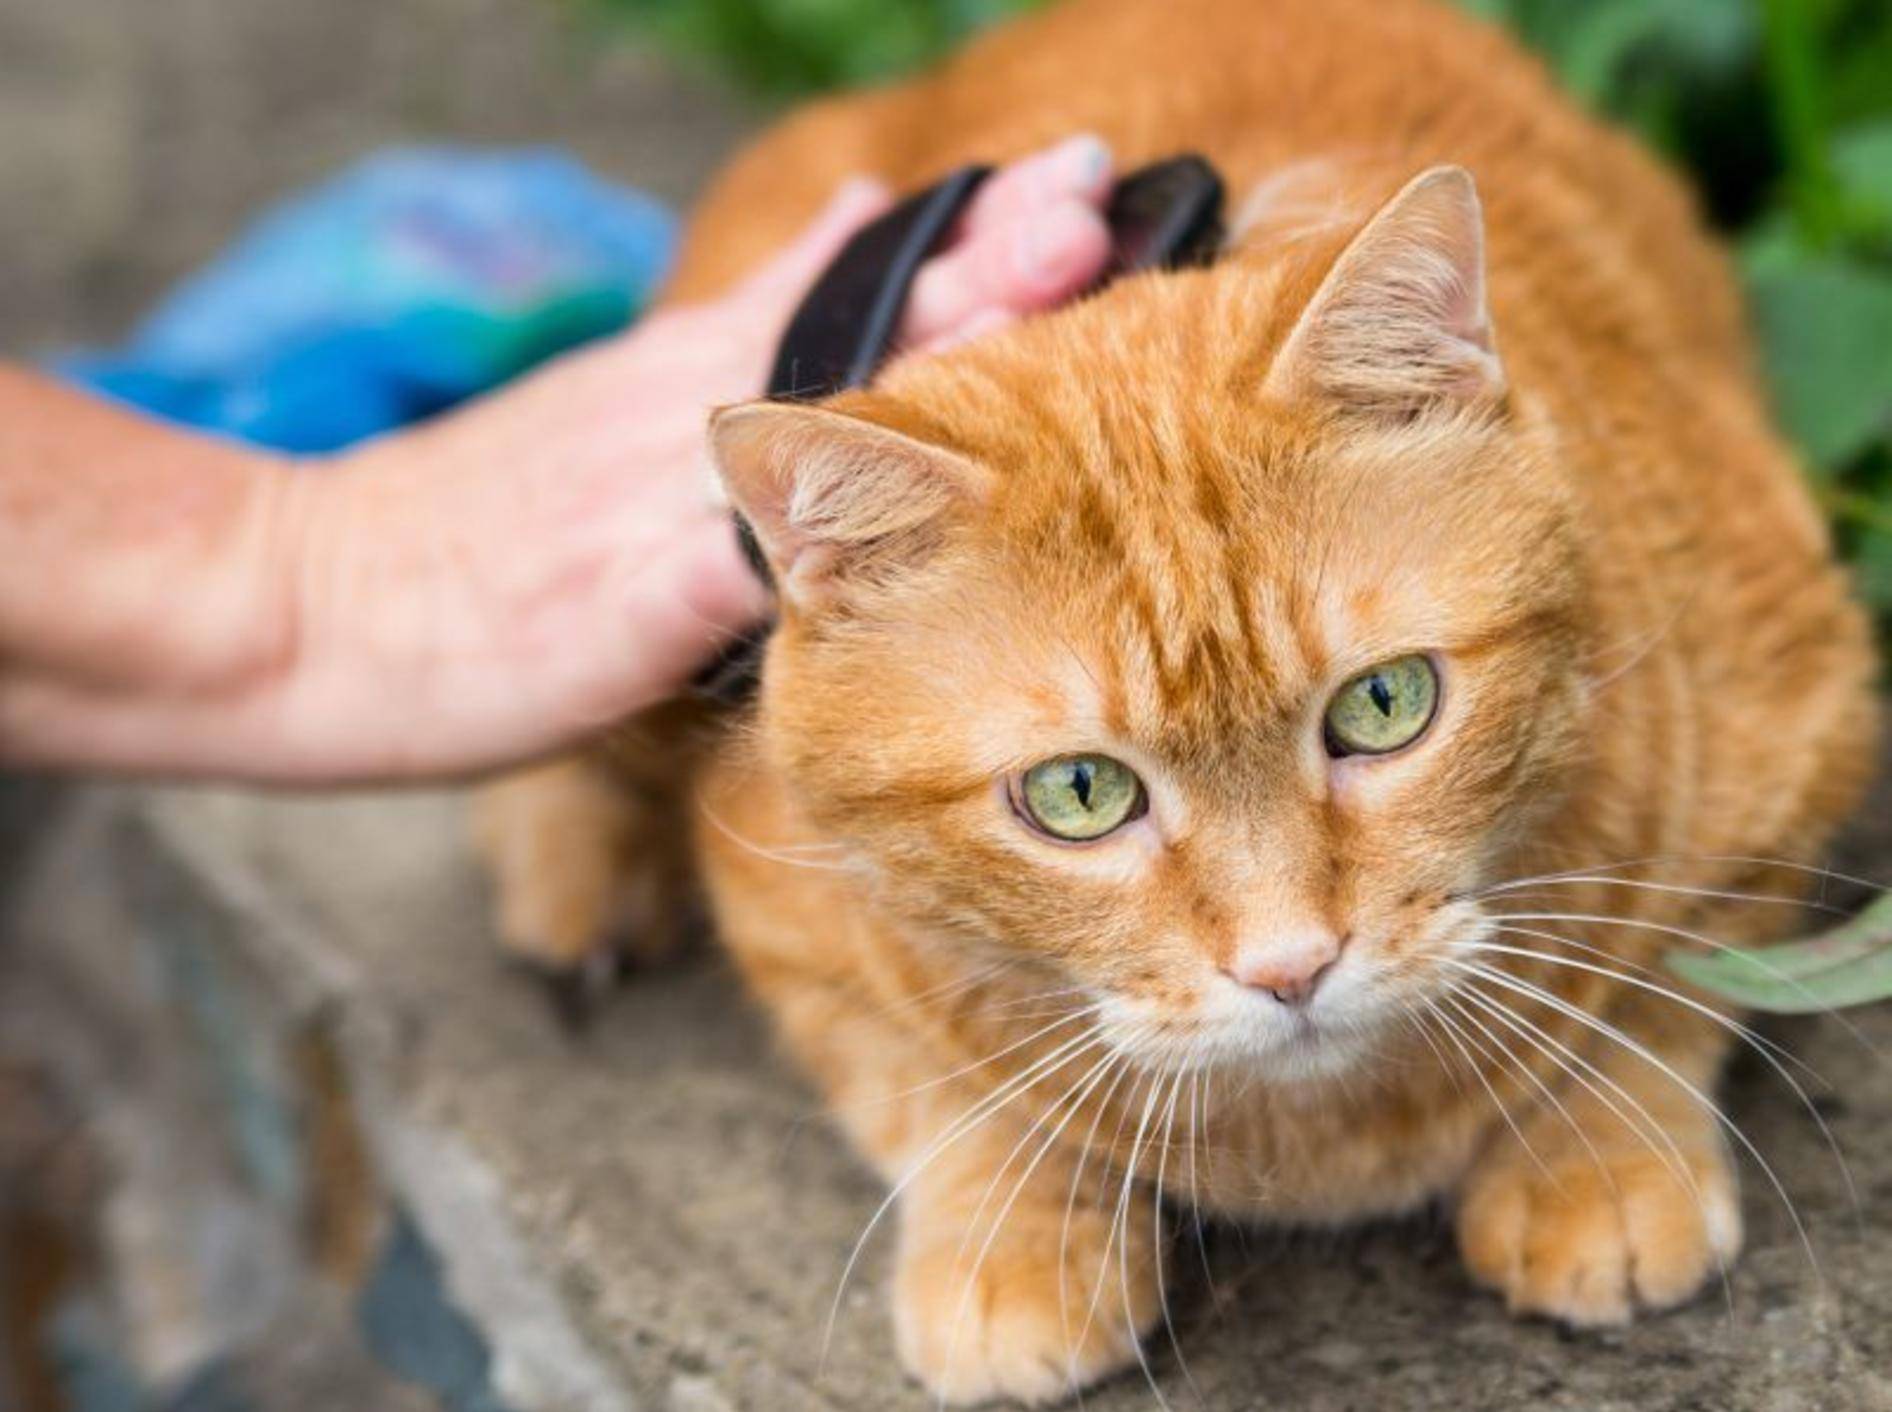 Bürsten wirkt bei der Behandlung von Schuppen bei Katzen unterstützend – Bild: Shutterstock / Vladimir Arndt